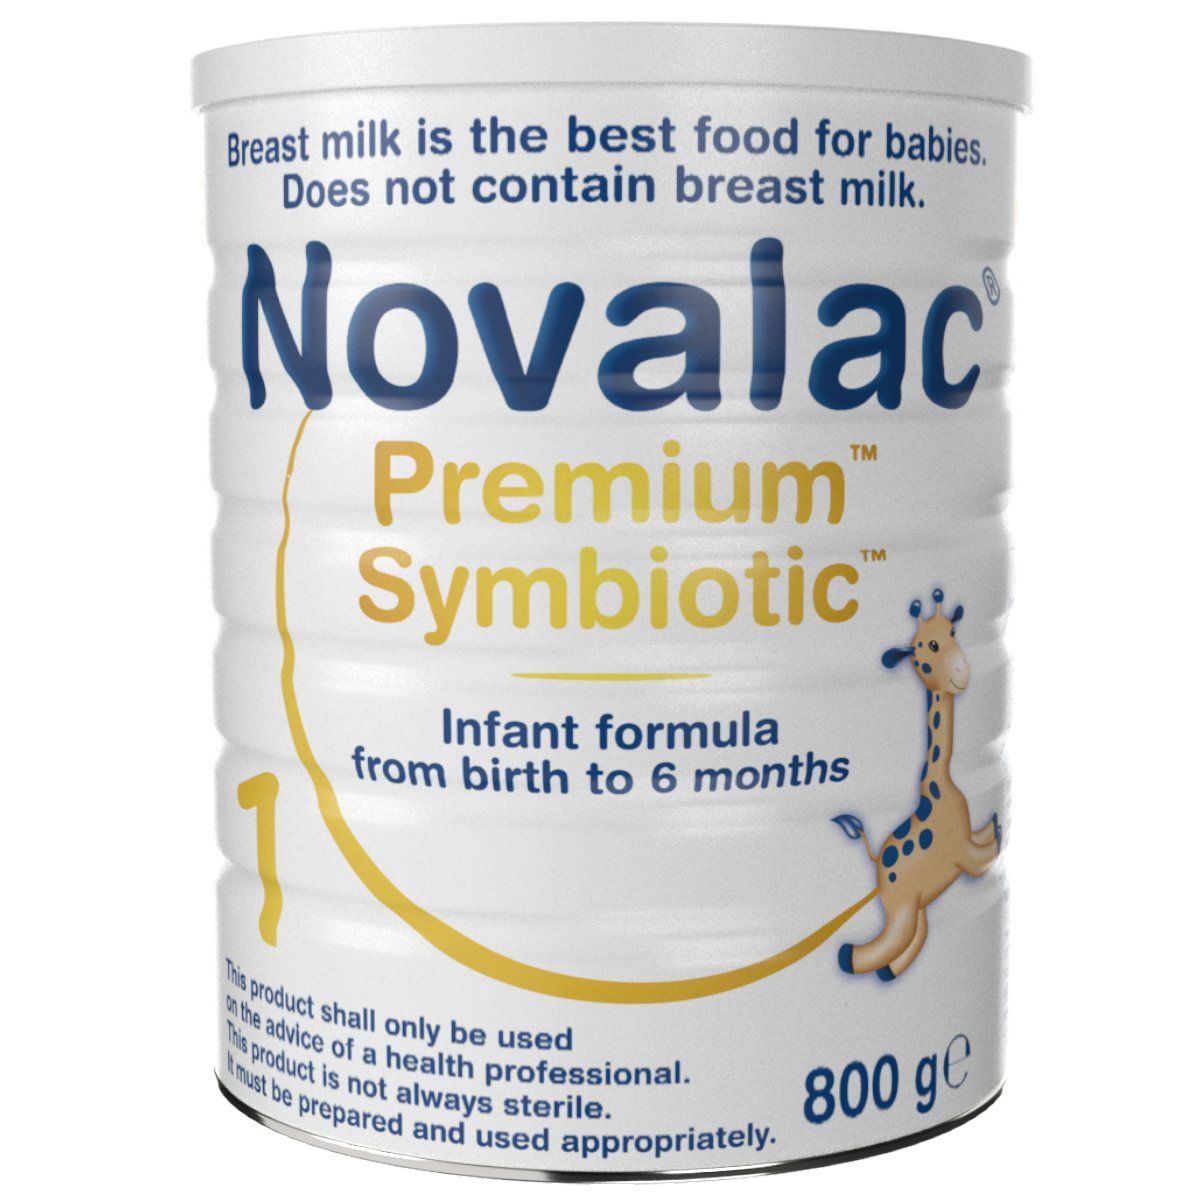 Novalac Premium 1 400 gr - Fortified milk formula for infants